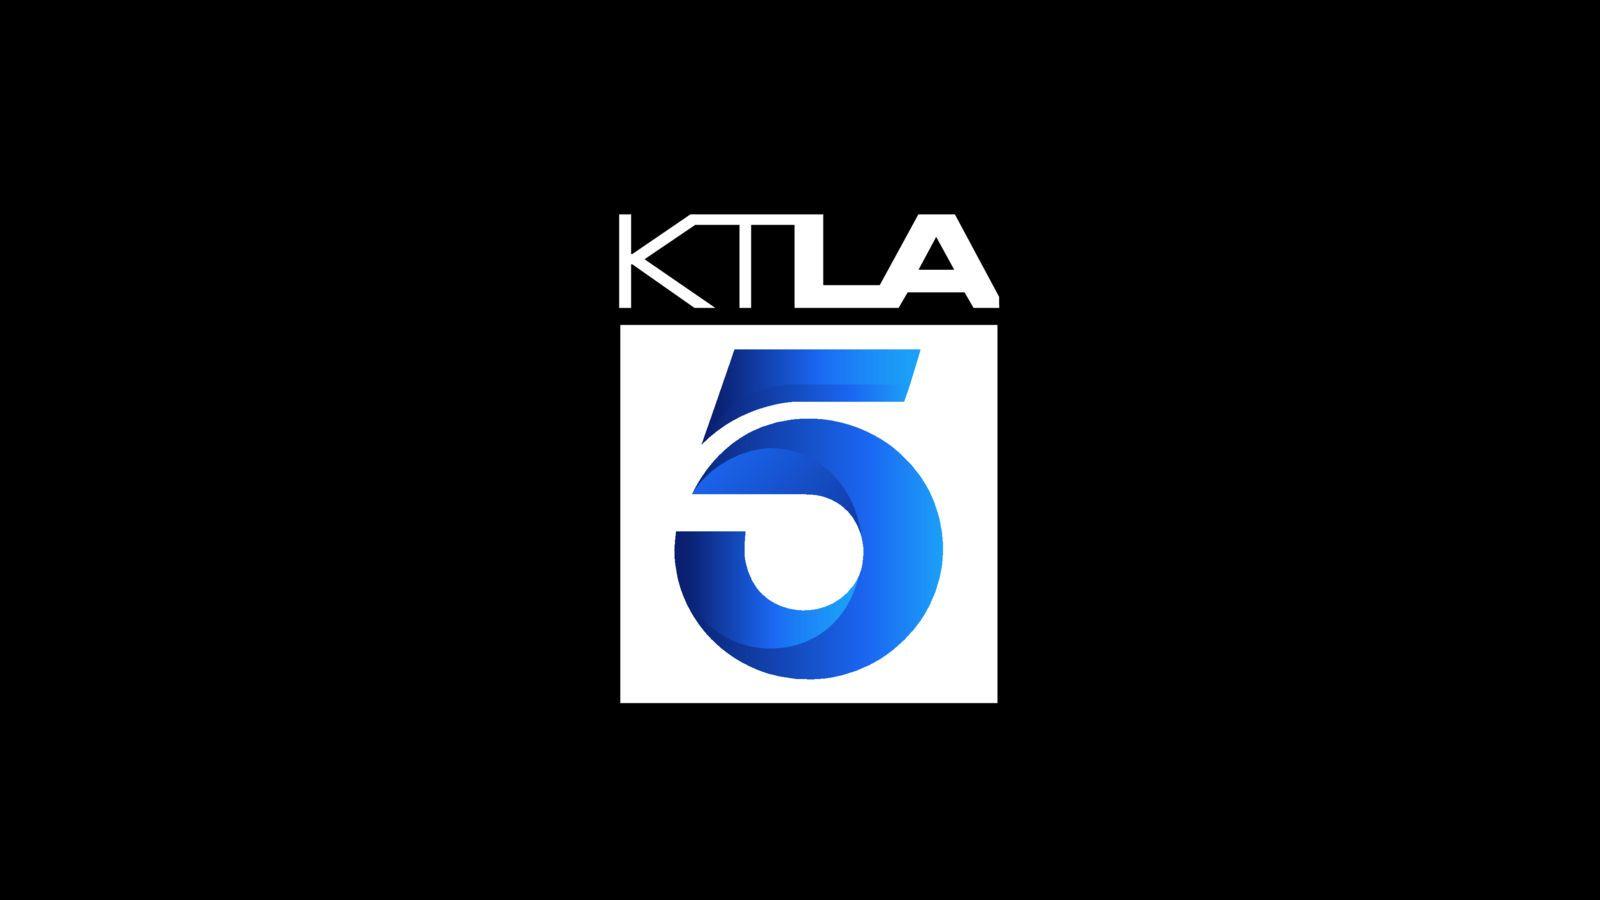 KTLA Logo - Job Openings at KTLA